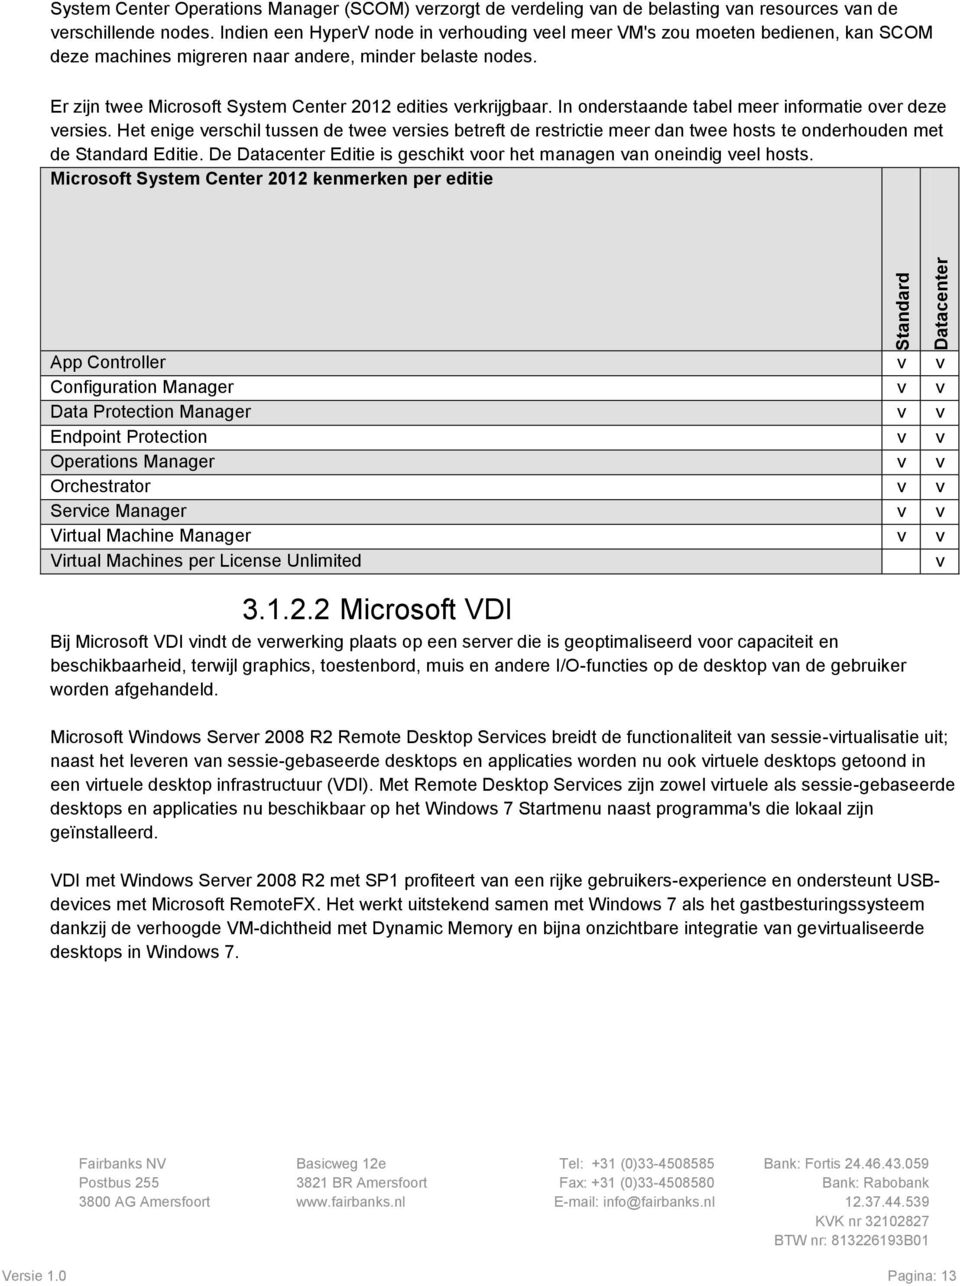 Er zijn twee Microsoft System Center 2012 edities verkrijgbaar. In onderstaande tabel meer informatie over deze versies.